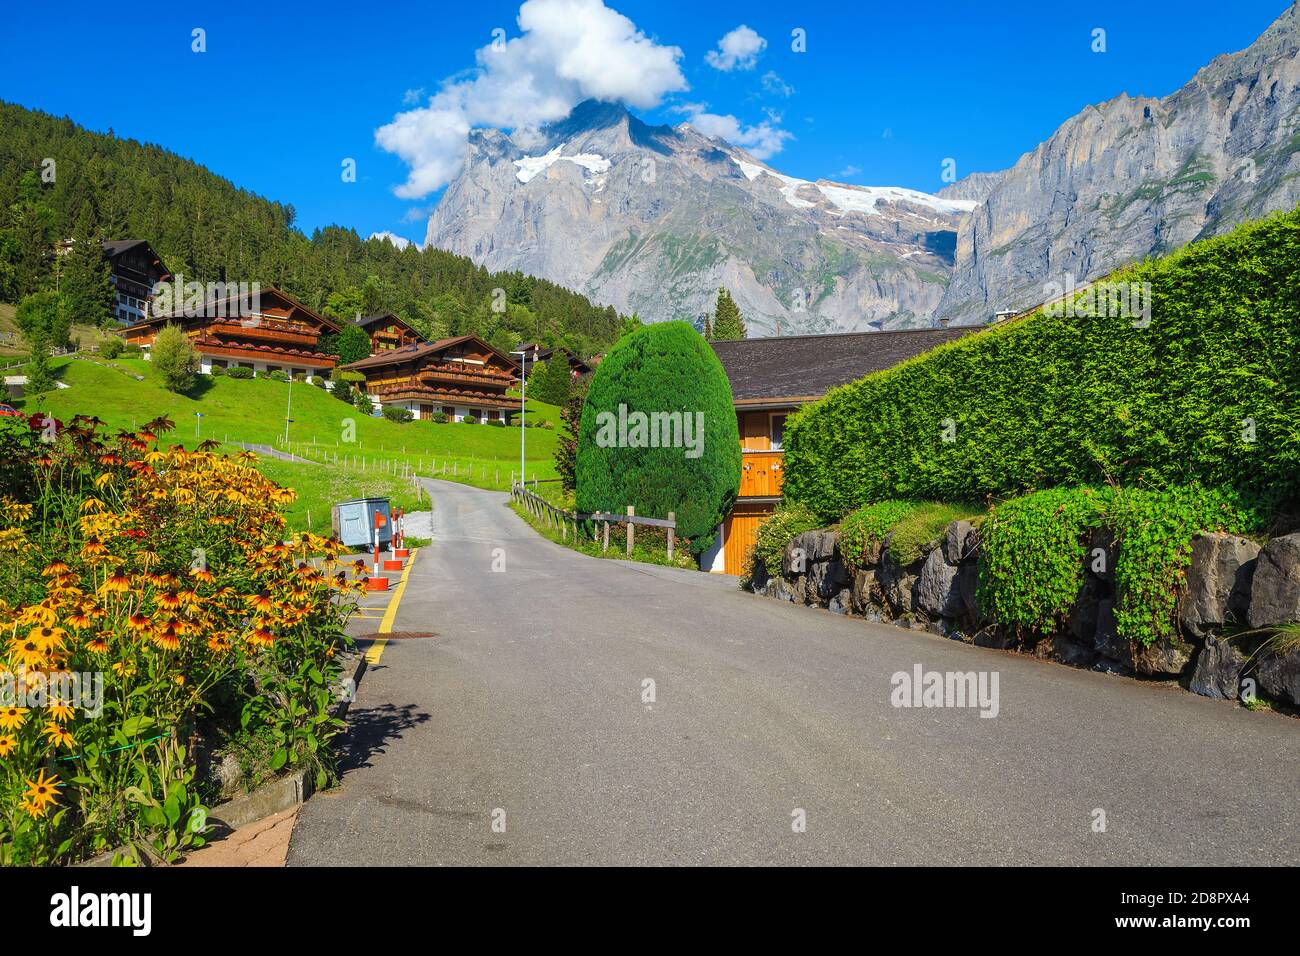 Maisons en bois avec des jardins étonnants et des vues à couper le souffle, Grindelwald, Oberland bernois, Suisse, Europe Banque D'Images